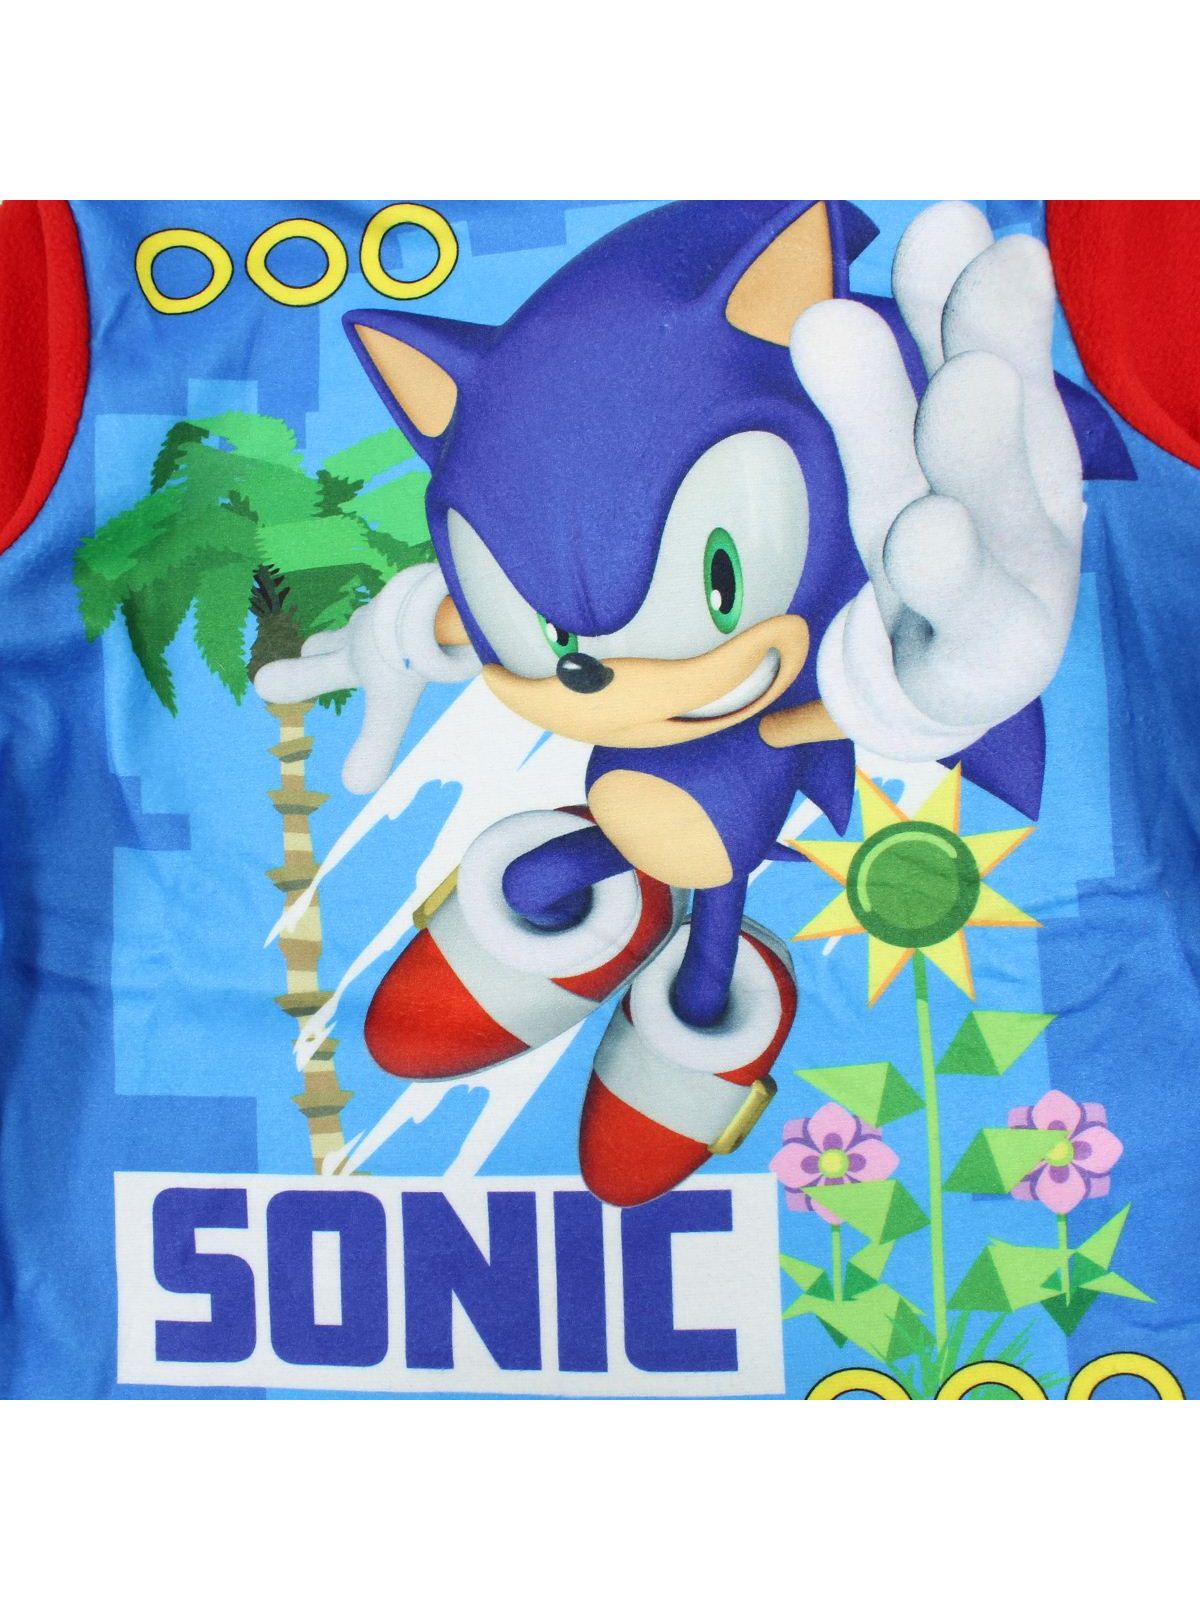 Pyjama polaire Sonic